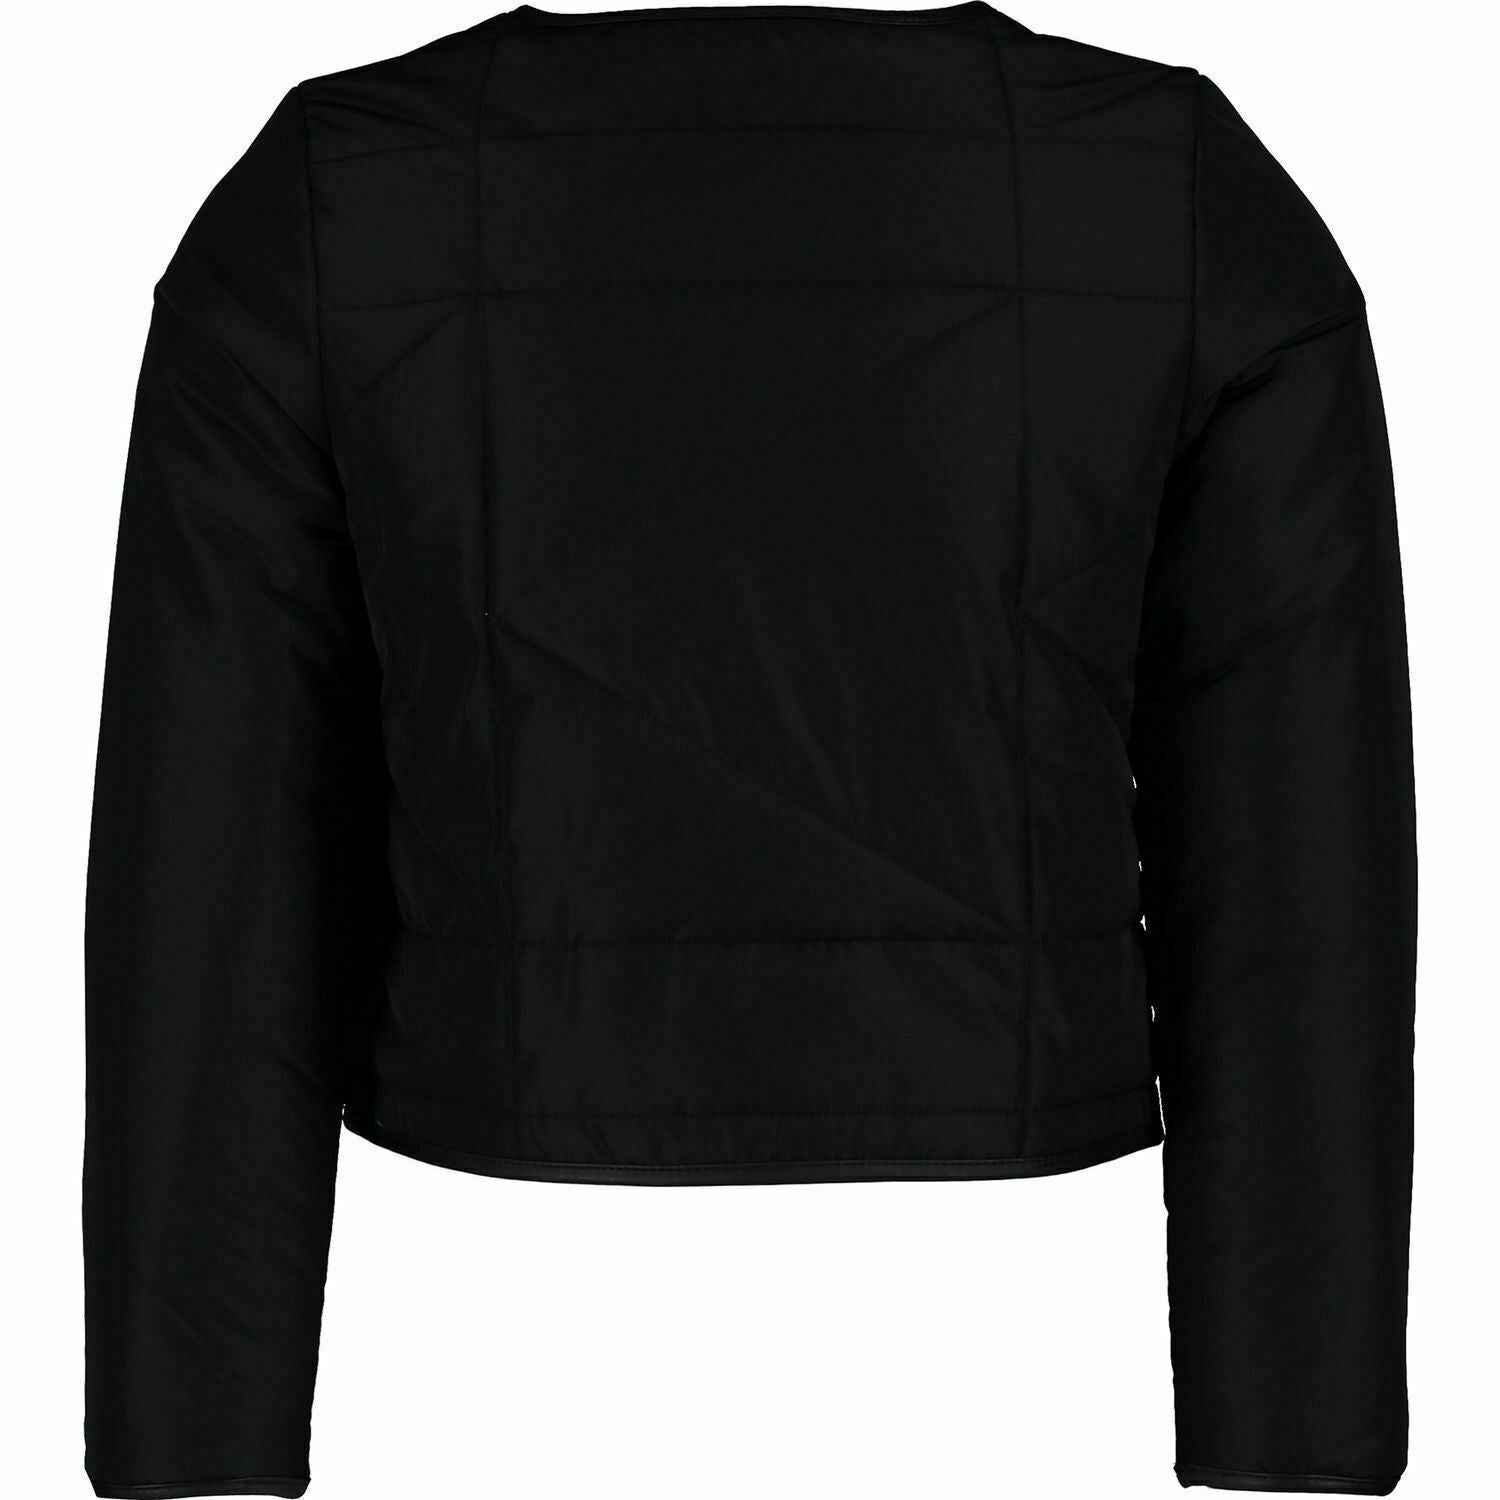 KARL LAGERFELD KIDS Girls' Black Padded Crop Jacket, 8 years / 126 cm, RRP Â£115